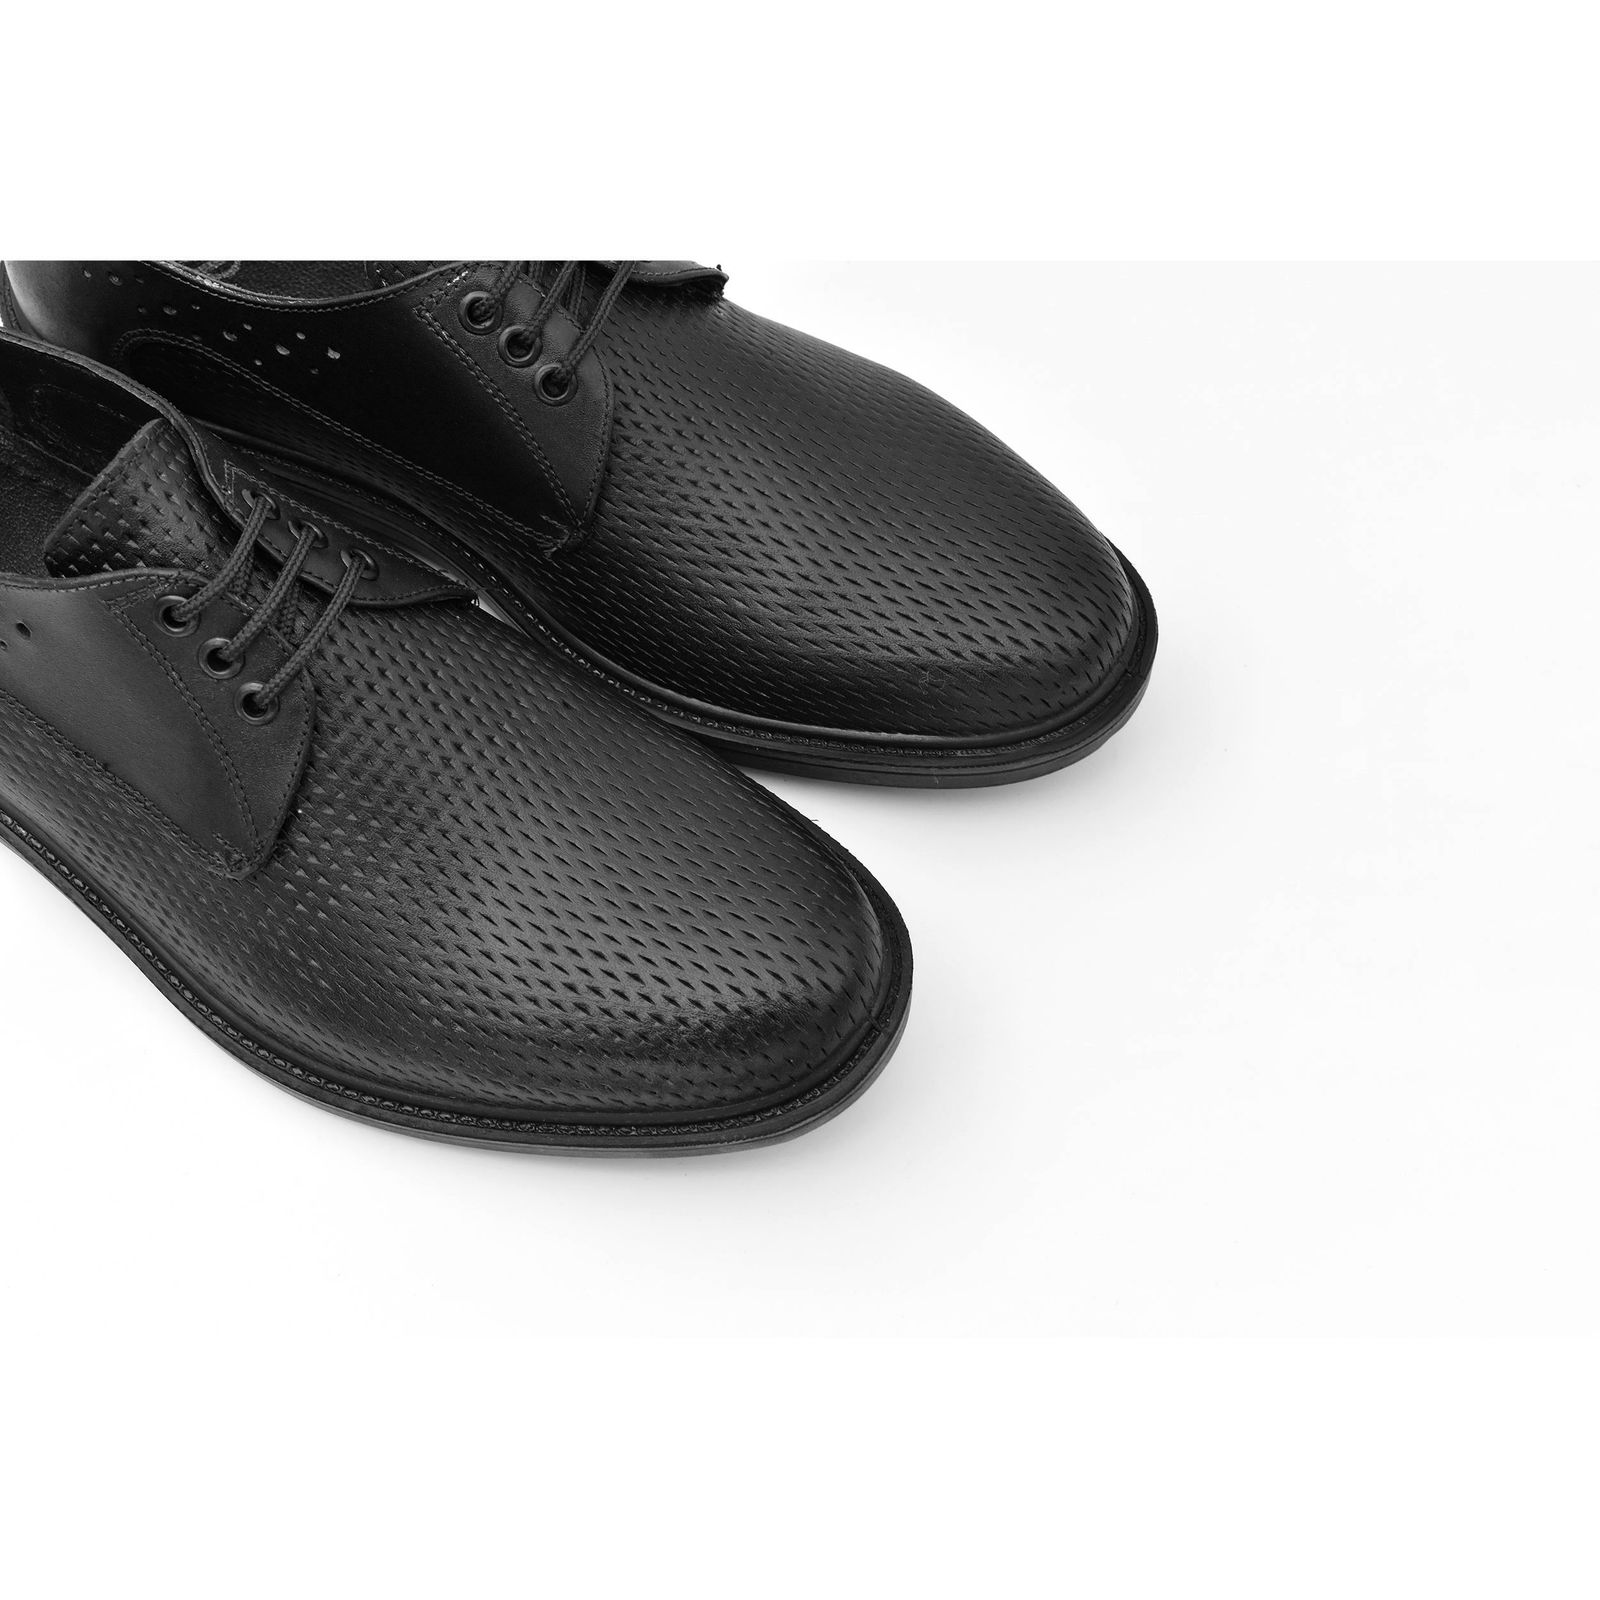 کفش مردانه پاما مدل Morano کد G1184 -  - 3